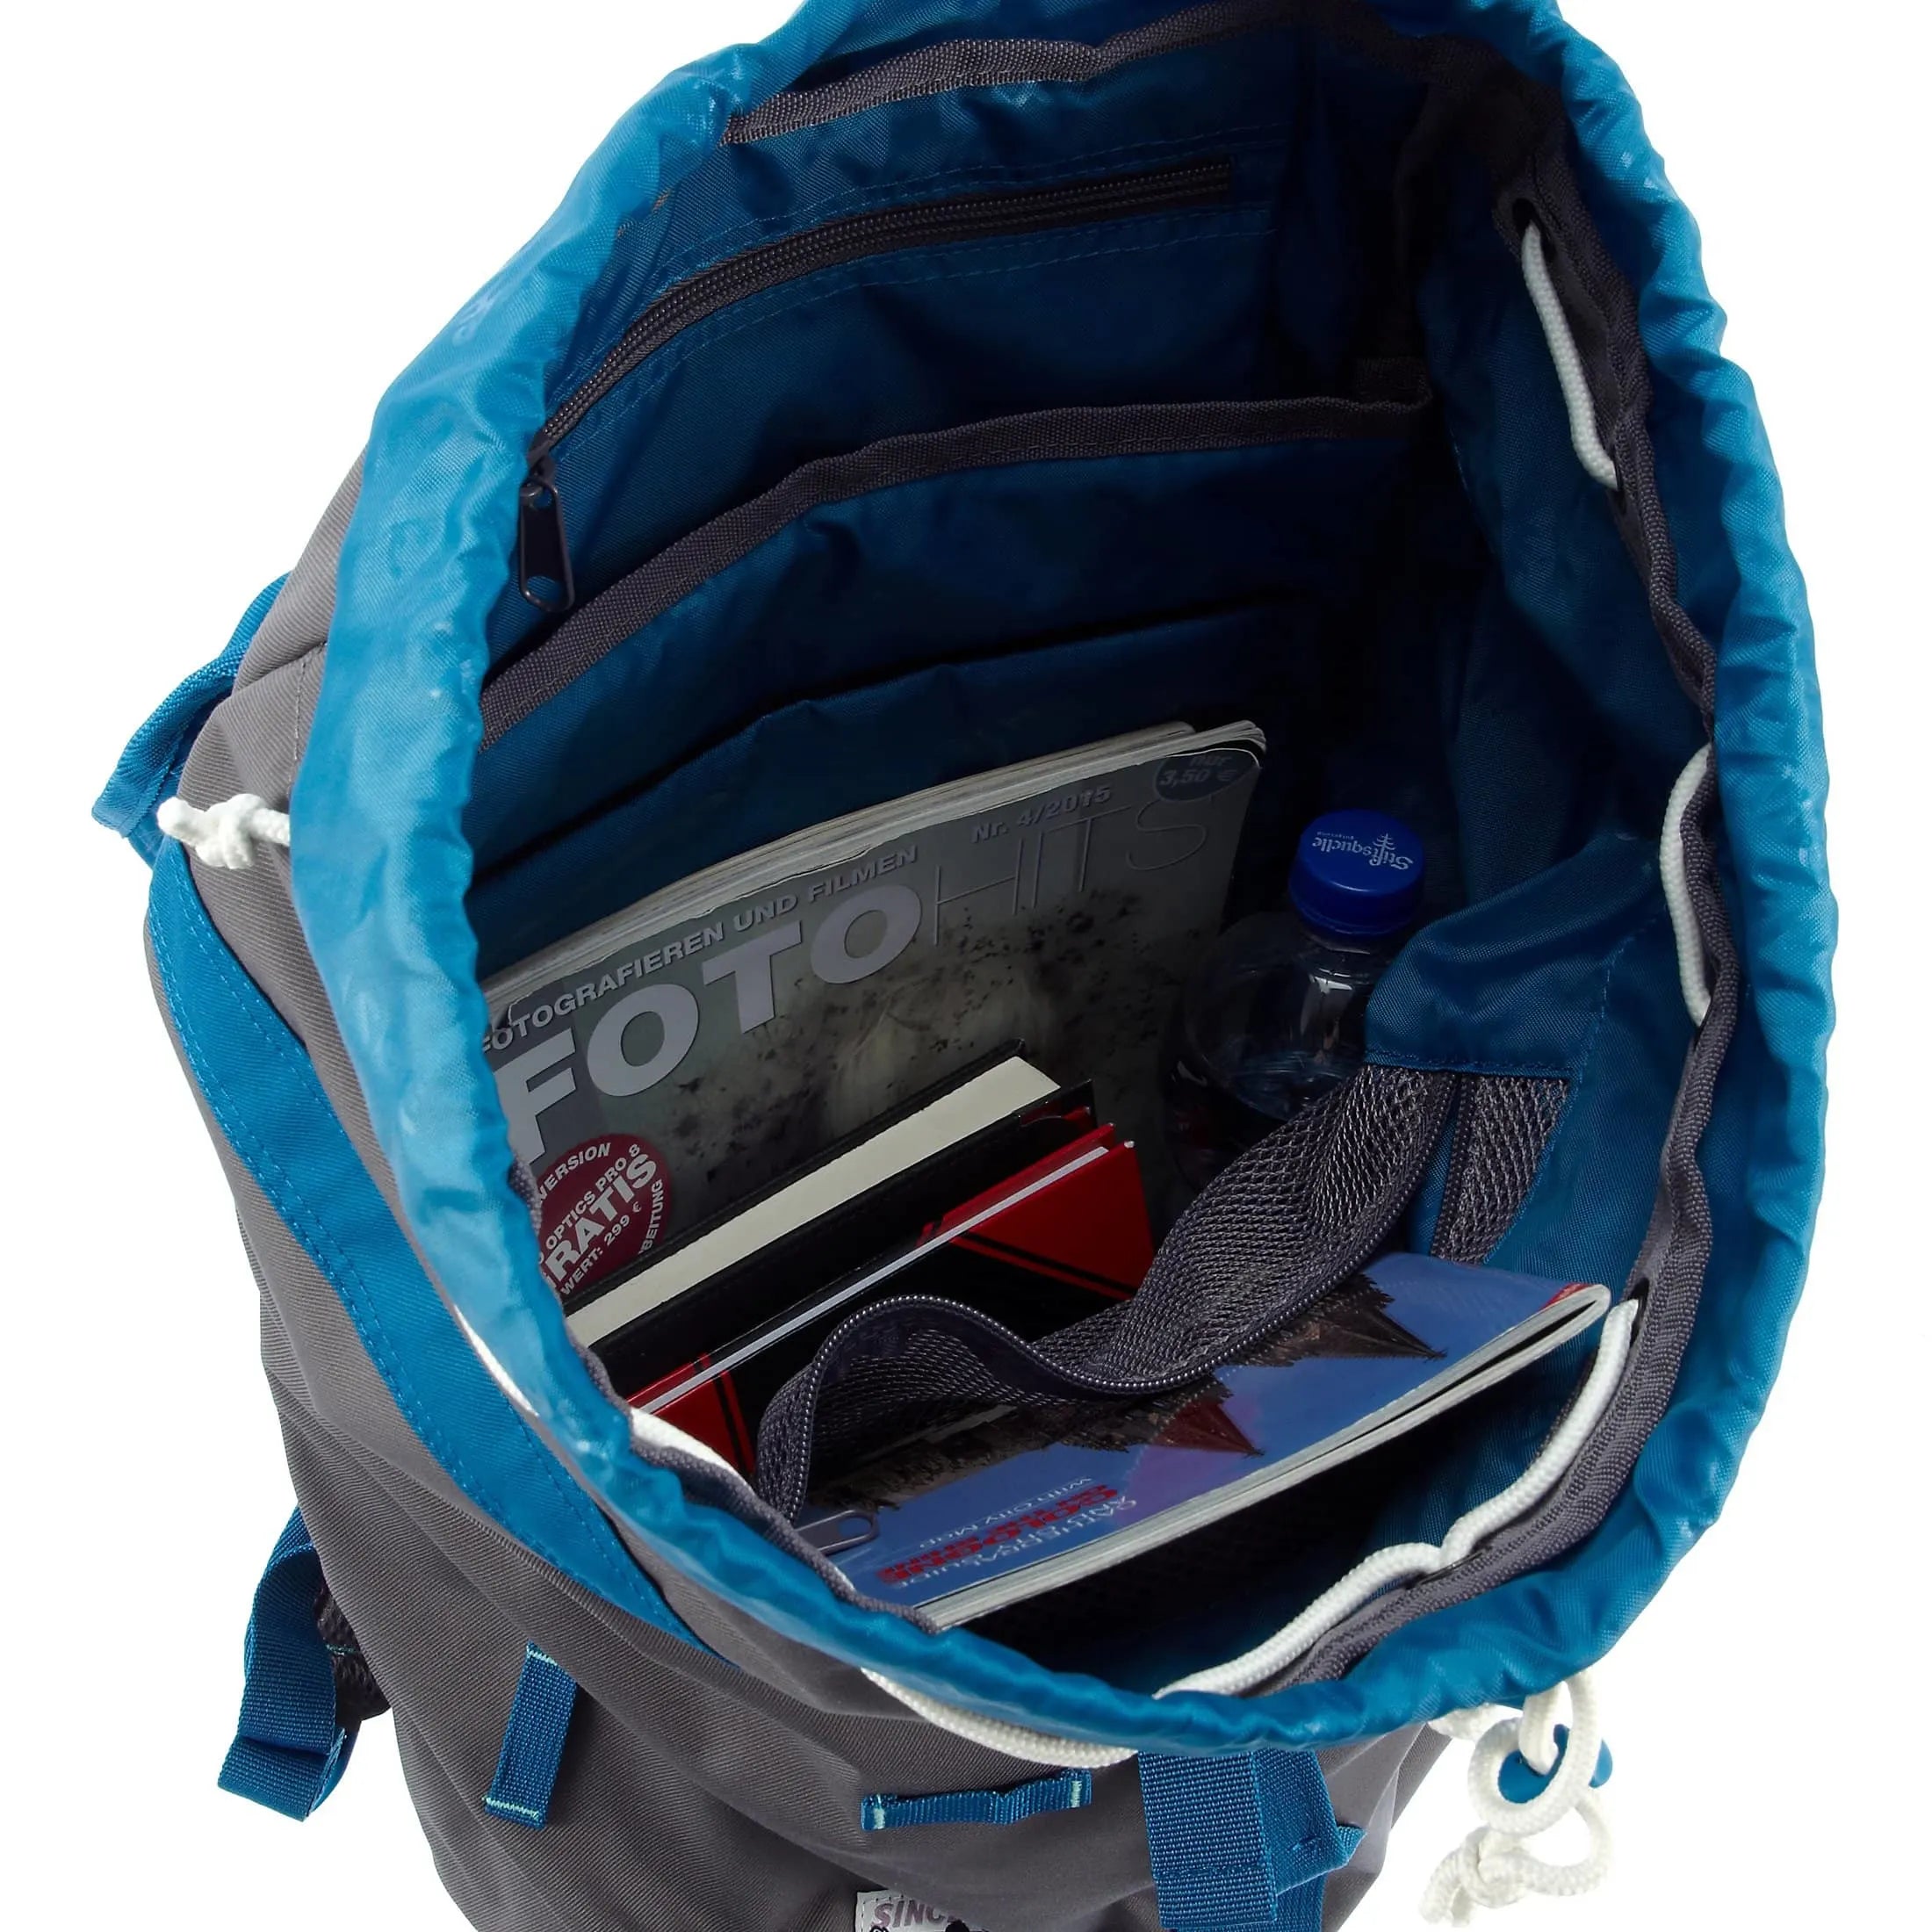 Chiemsee Urban Explorer Oslo sac à dos avec compartiment ordinateur 45 cm - saphir bleu excalibur